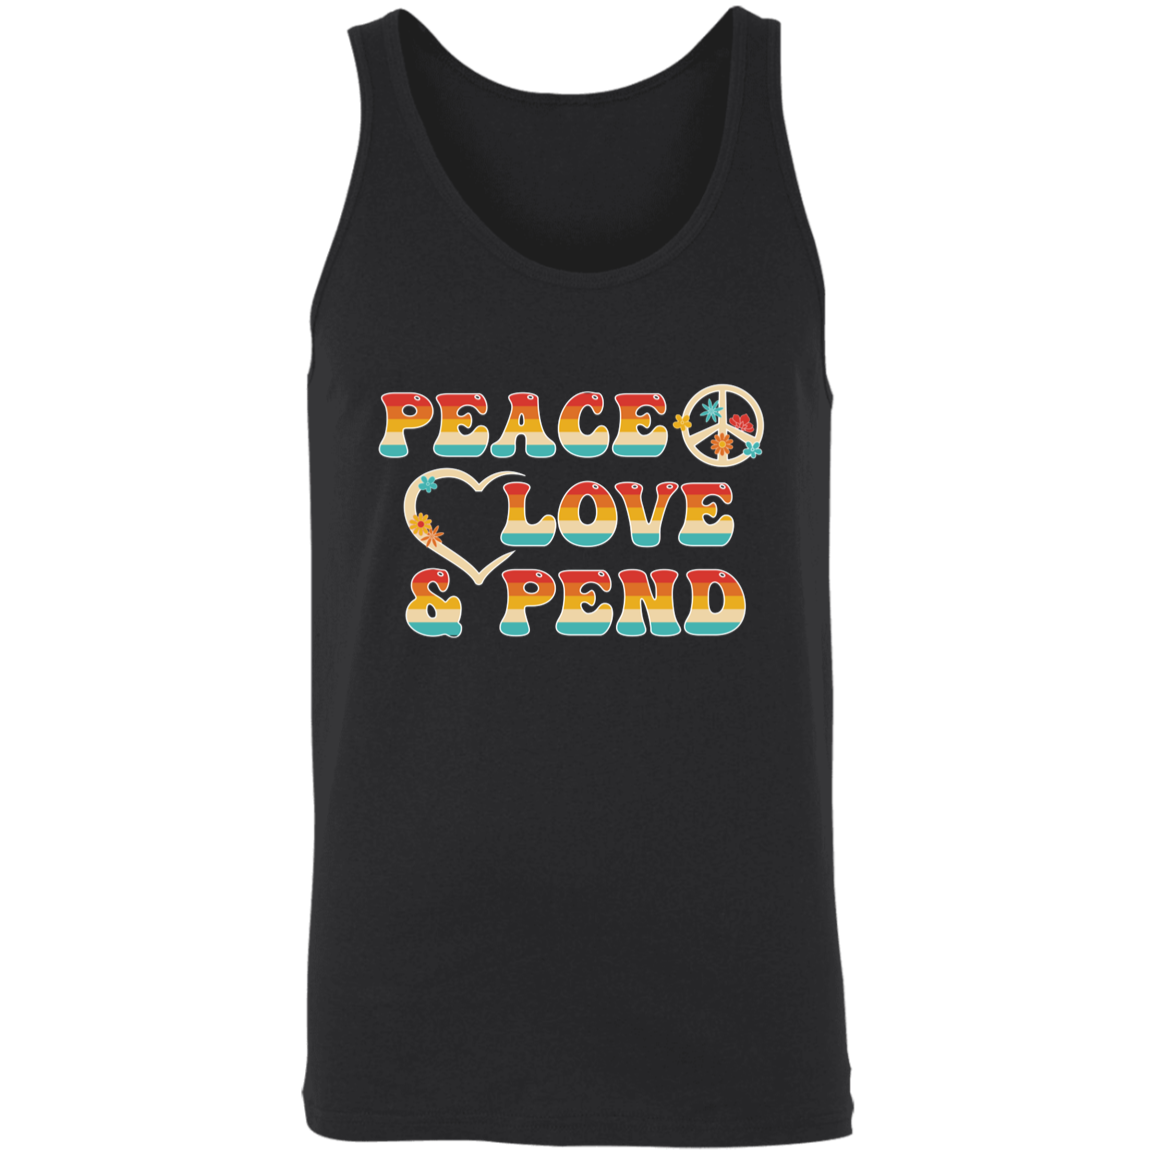 Peace, Love & Pend - Tank